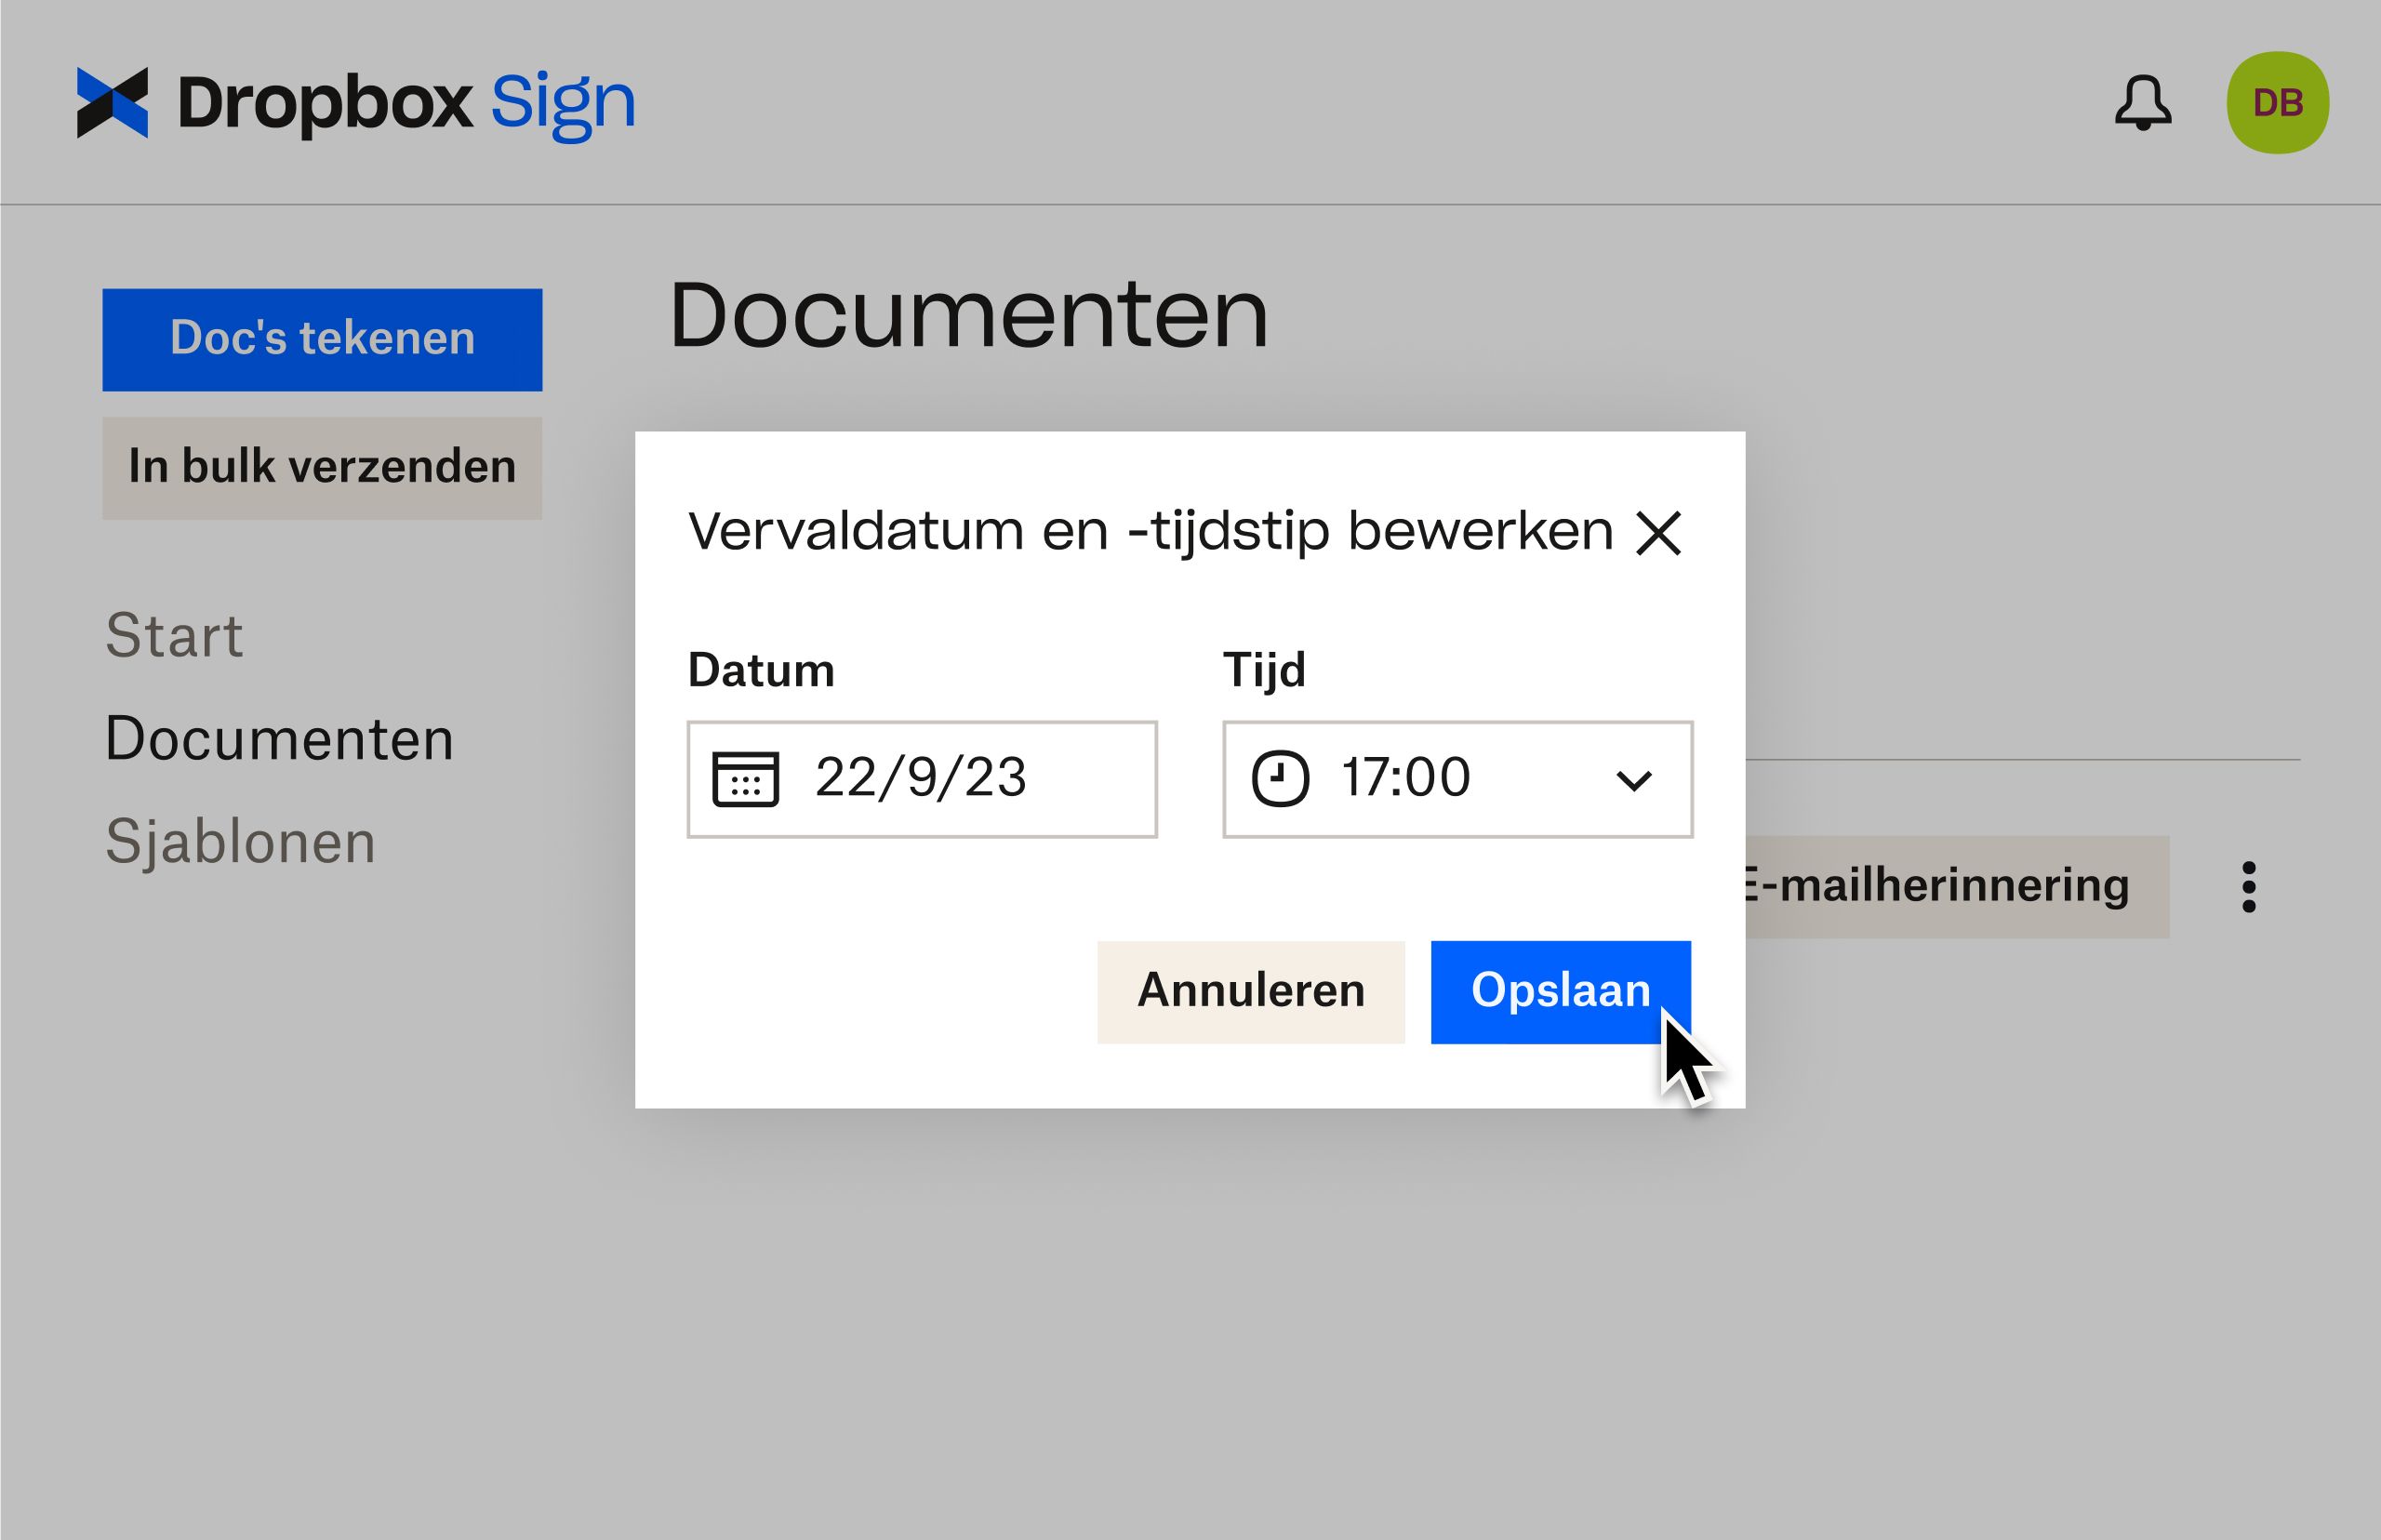 Dropbox Sign-UI laat zien hoe je vervaldatums kunt aanpassen nadat een document al ter ondertekening is verstuurd